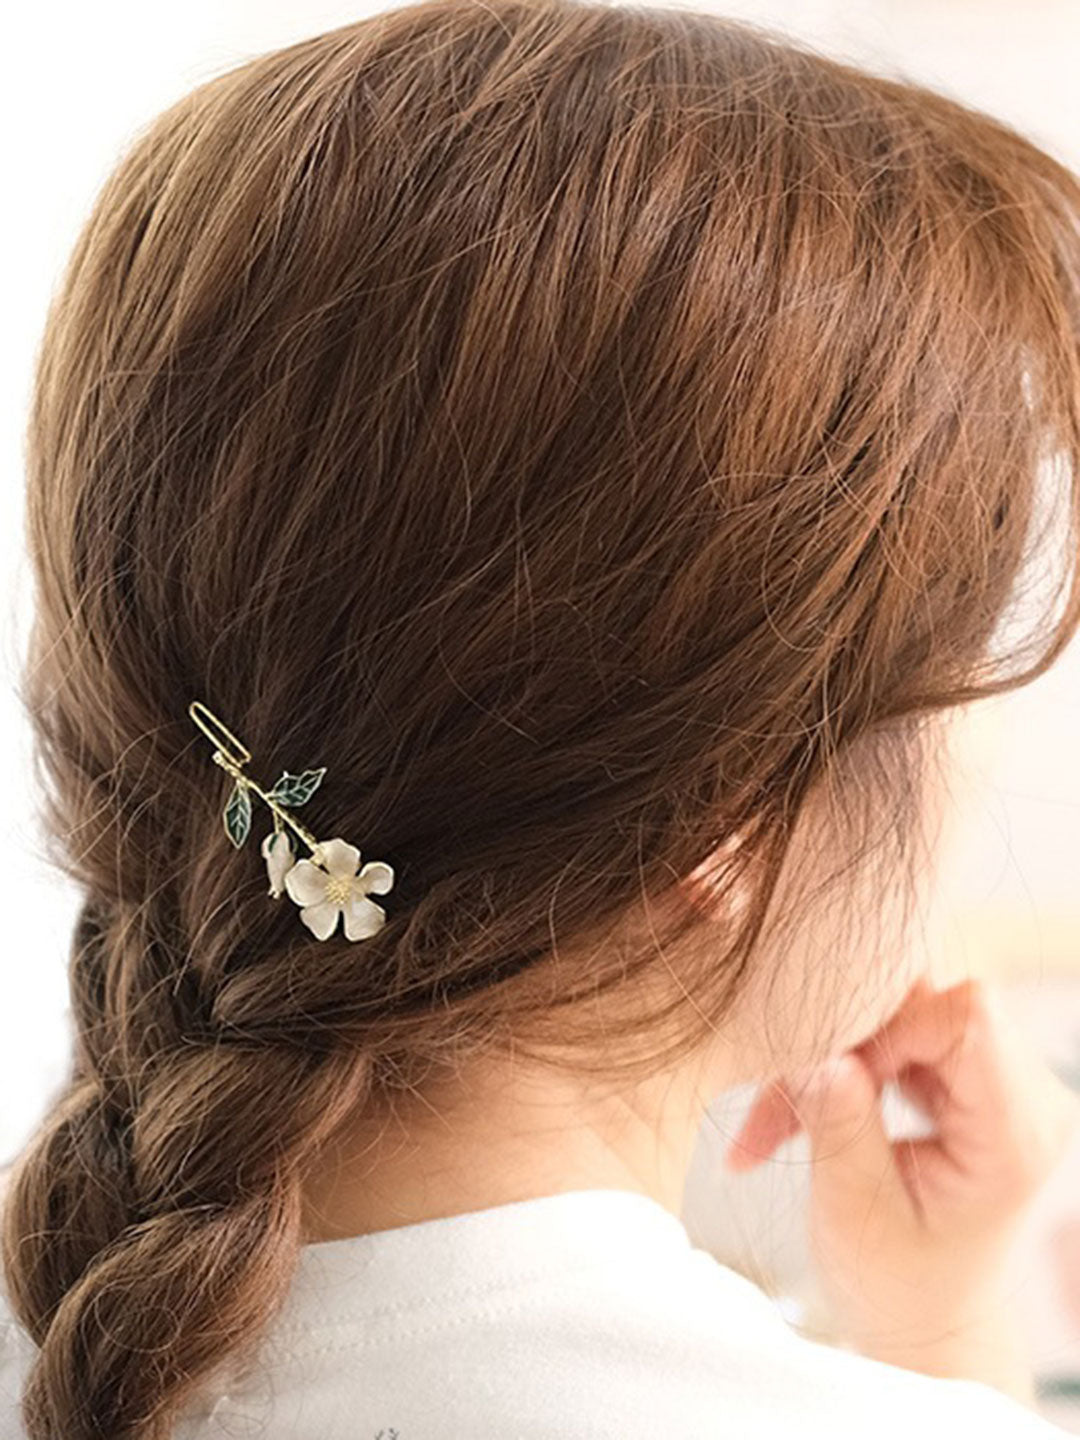 Retro Floral Hair Clip Accessories